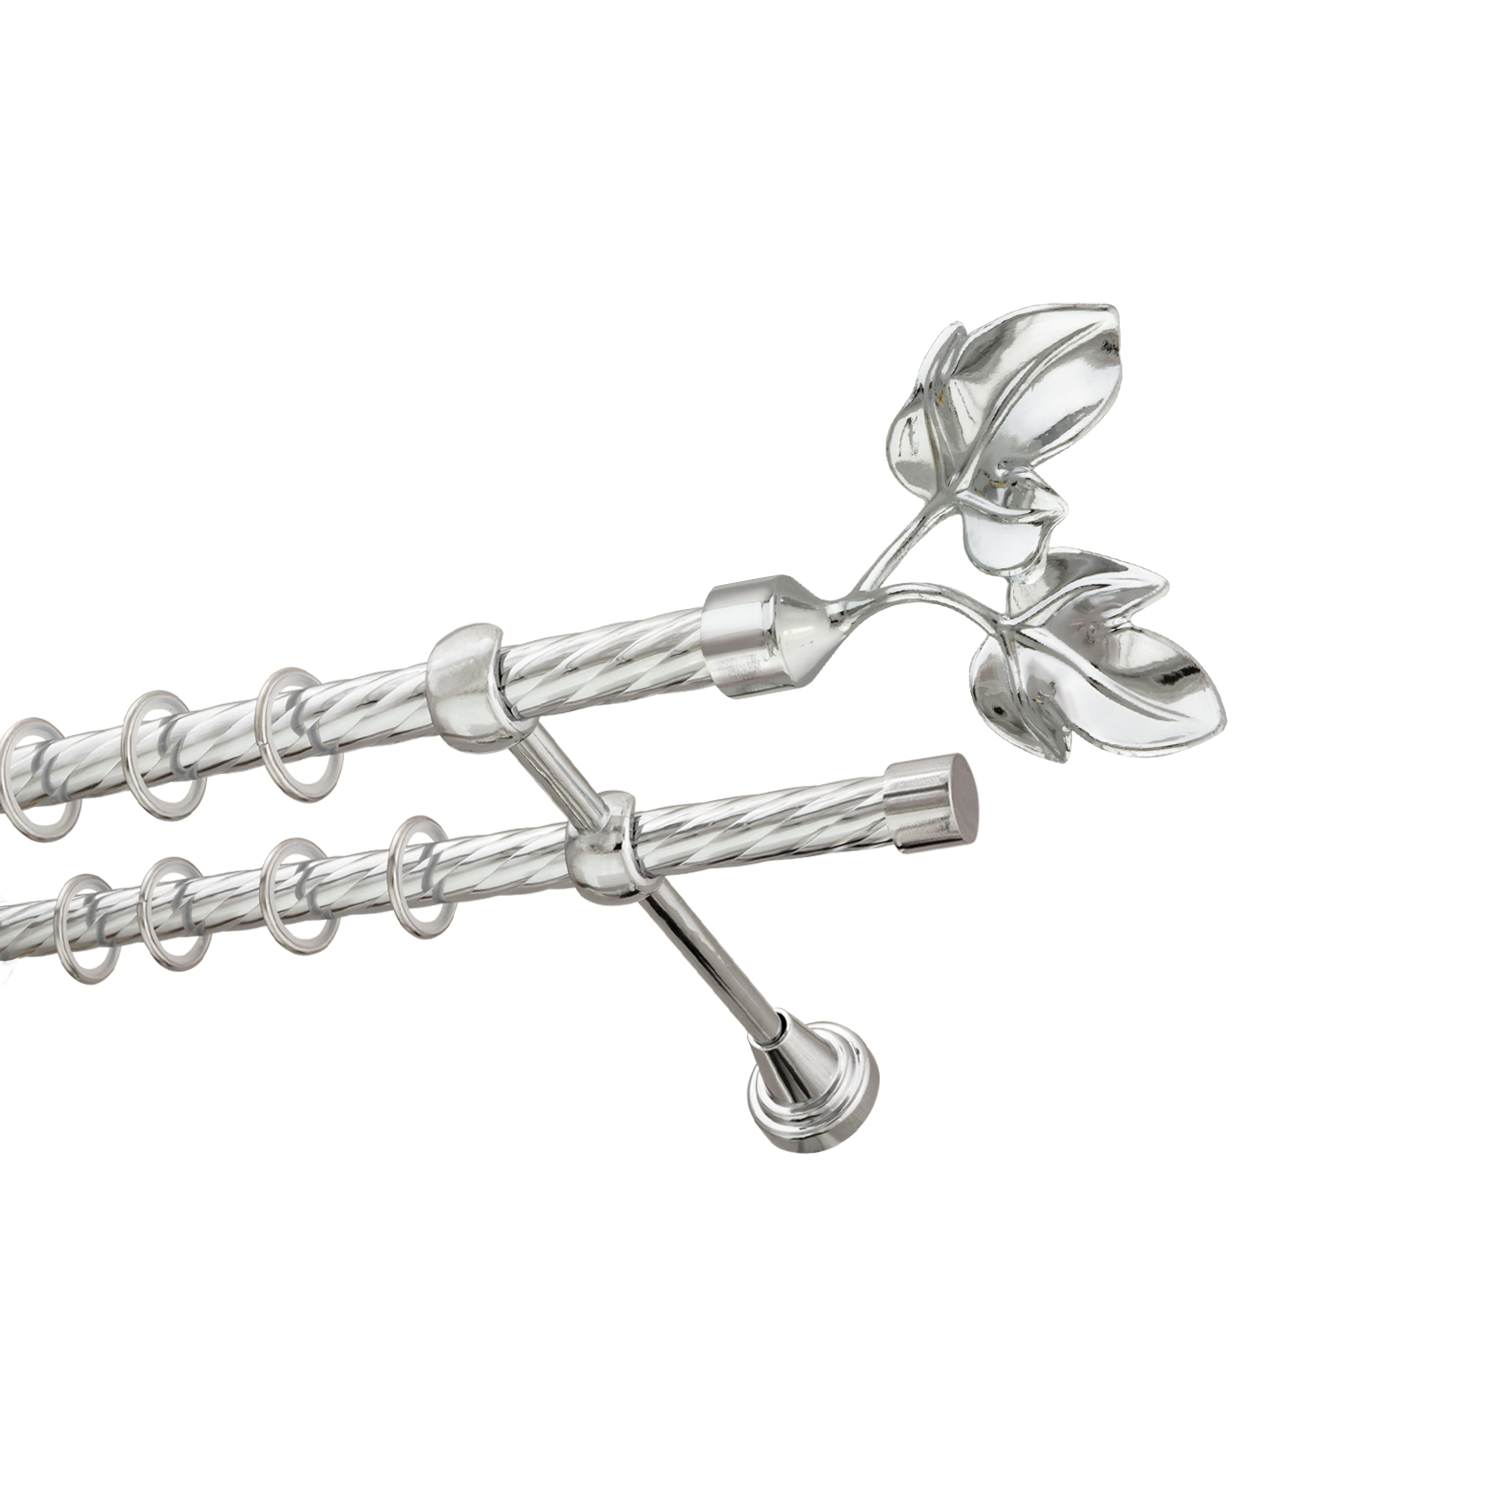 Металлический карниз для штор Листья, двухрядный 16/16 мм, серебро, витая штанга, длина 300 см - фото Wikidecor.ru